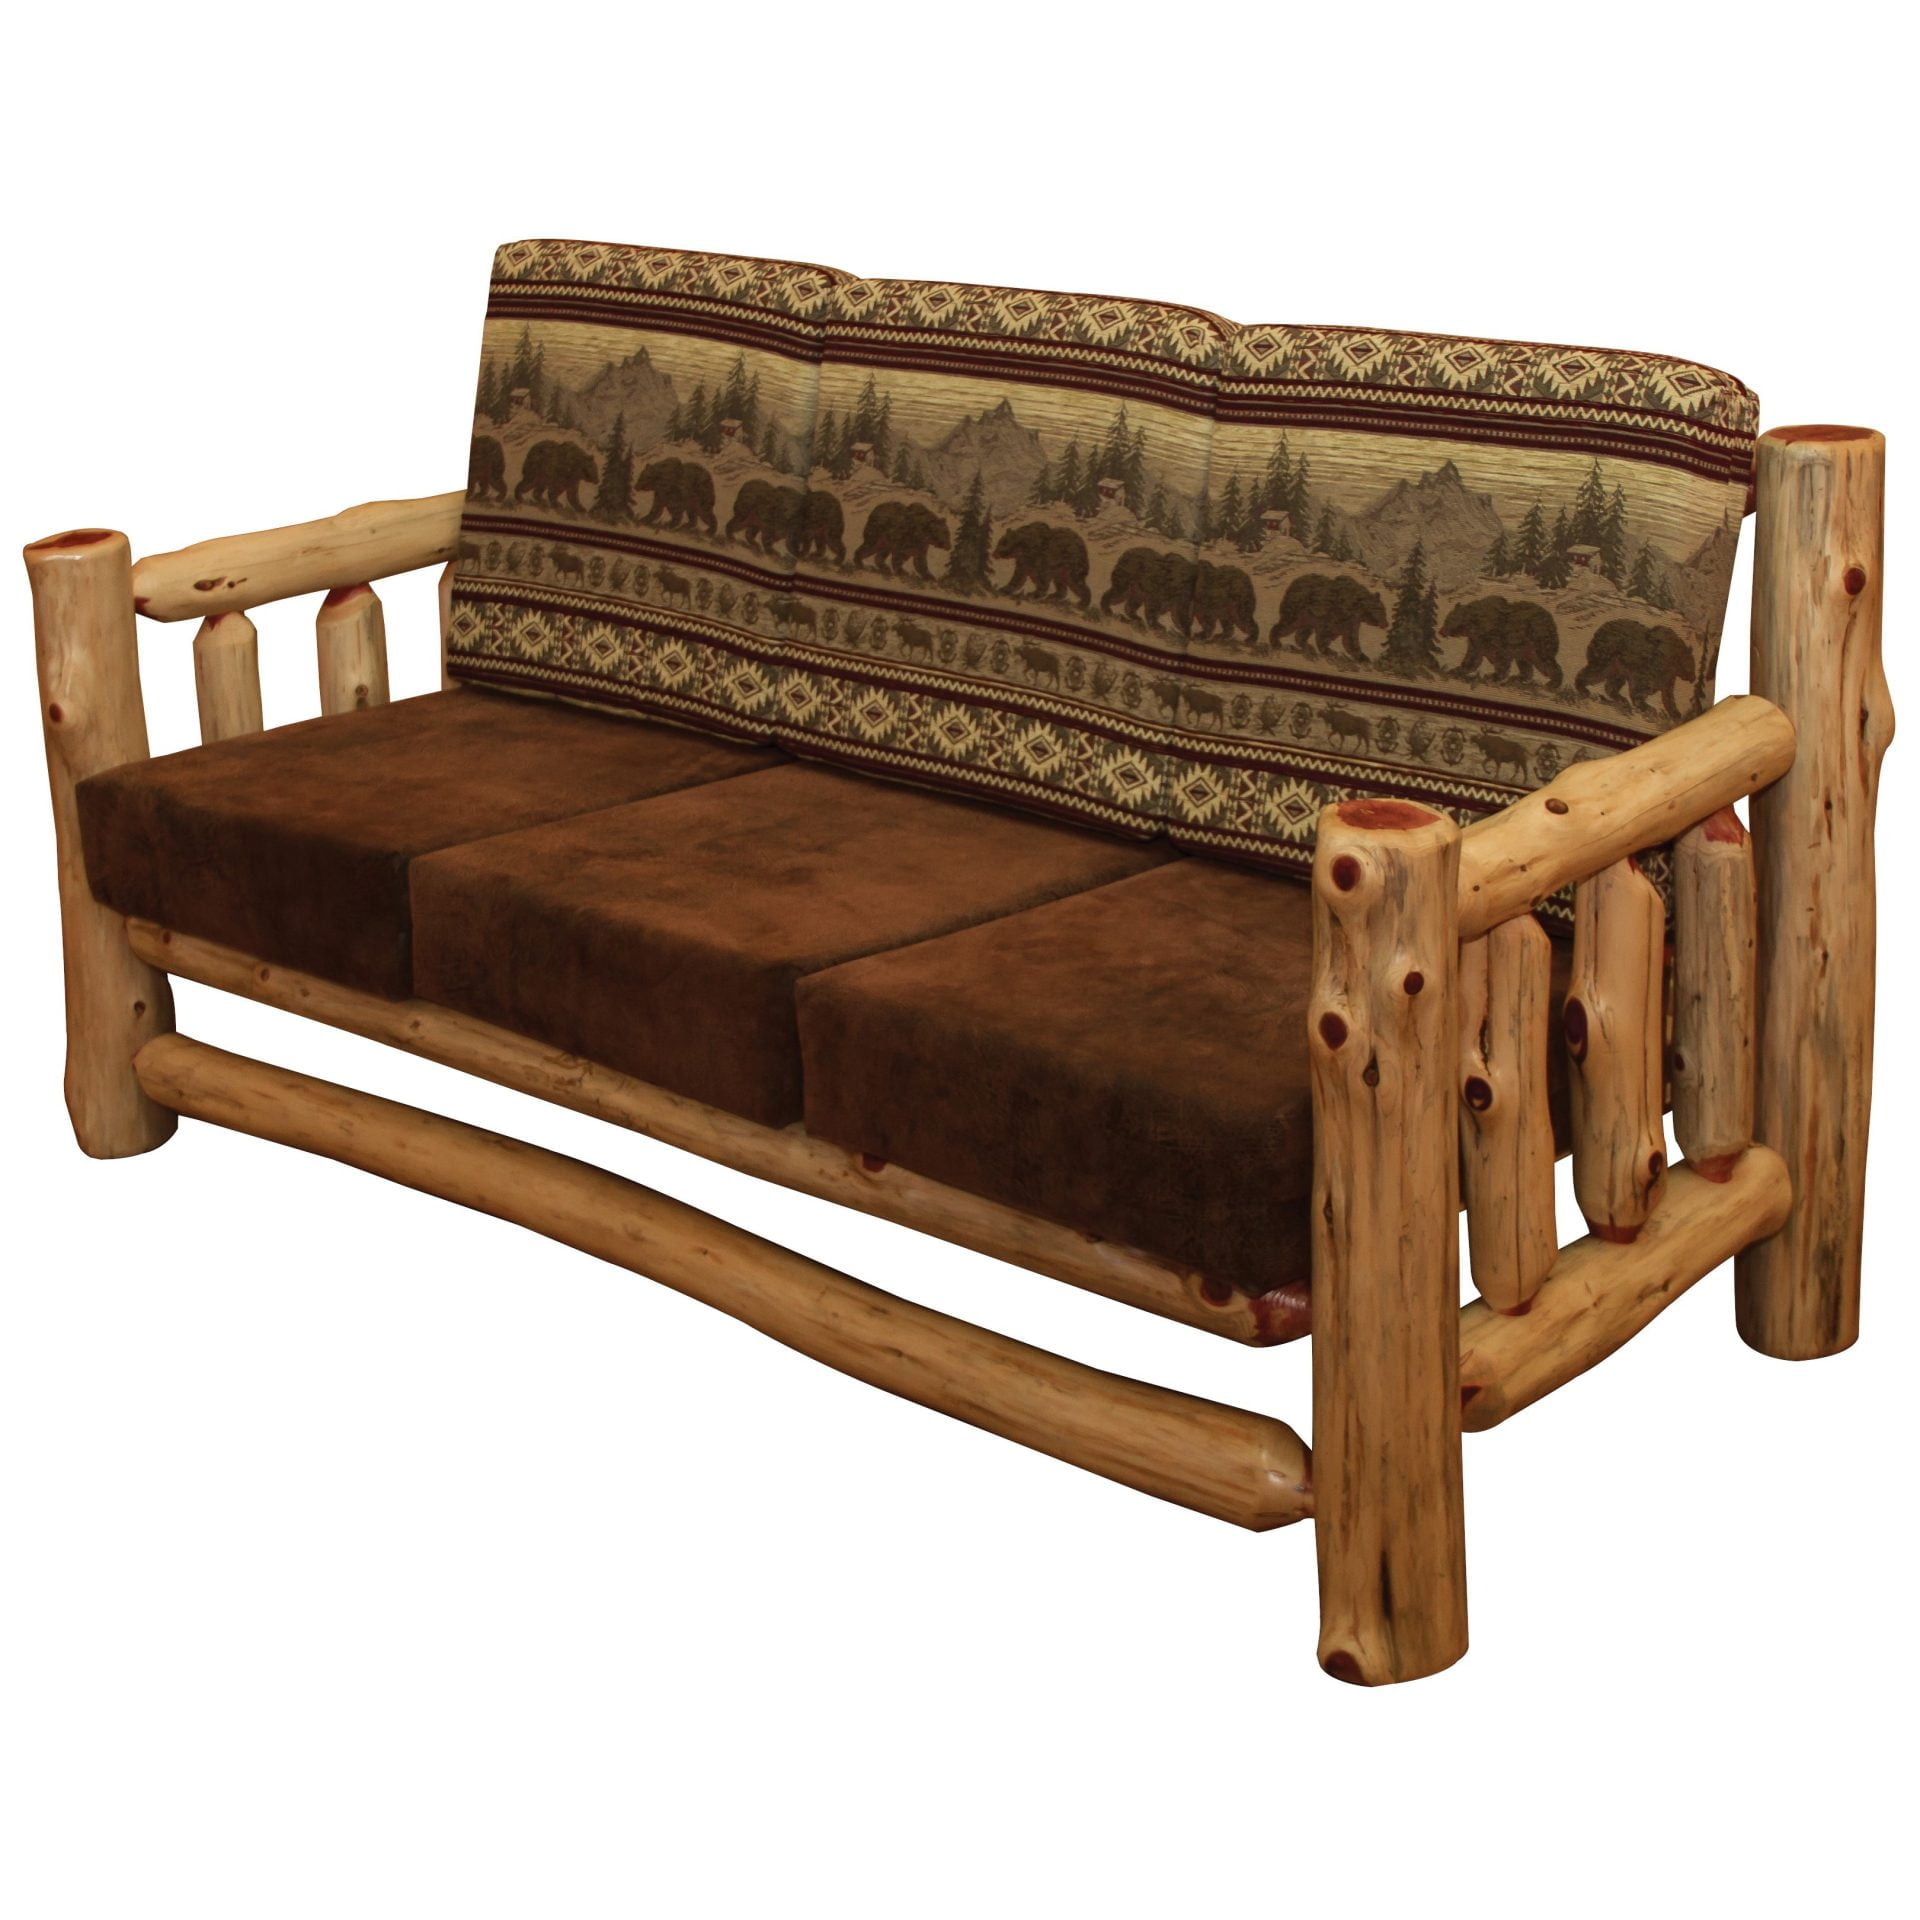 Rustic Red Cedar Log Santa Fe Couch